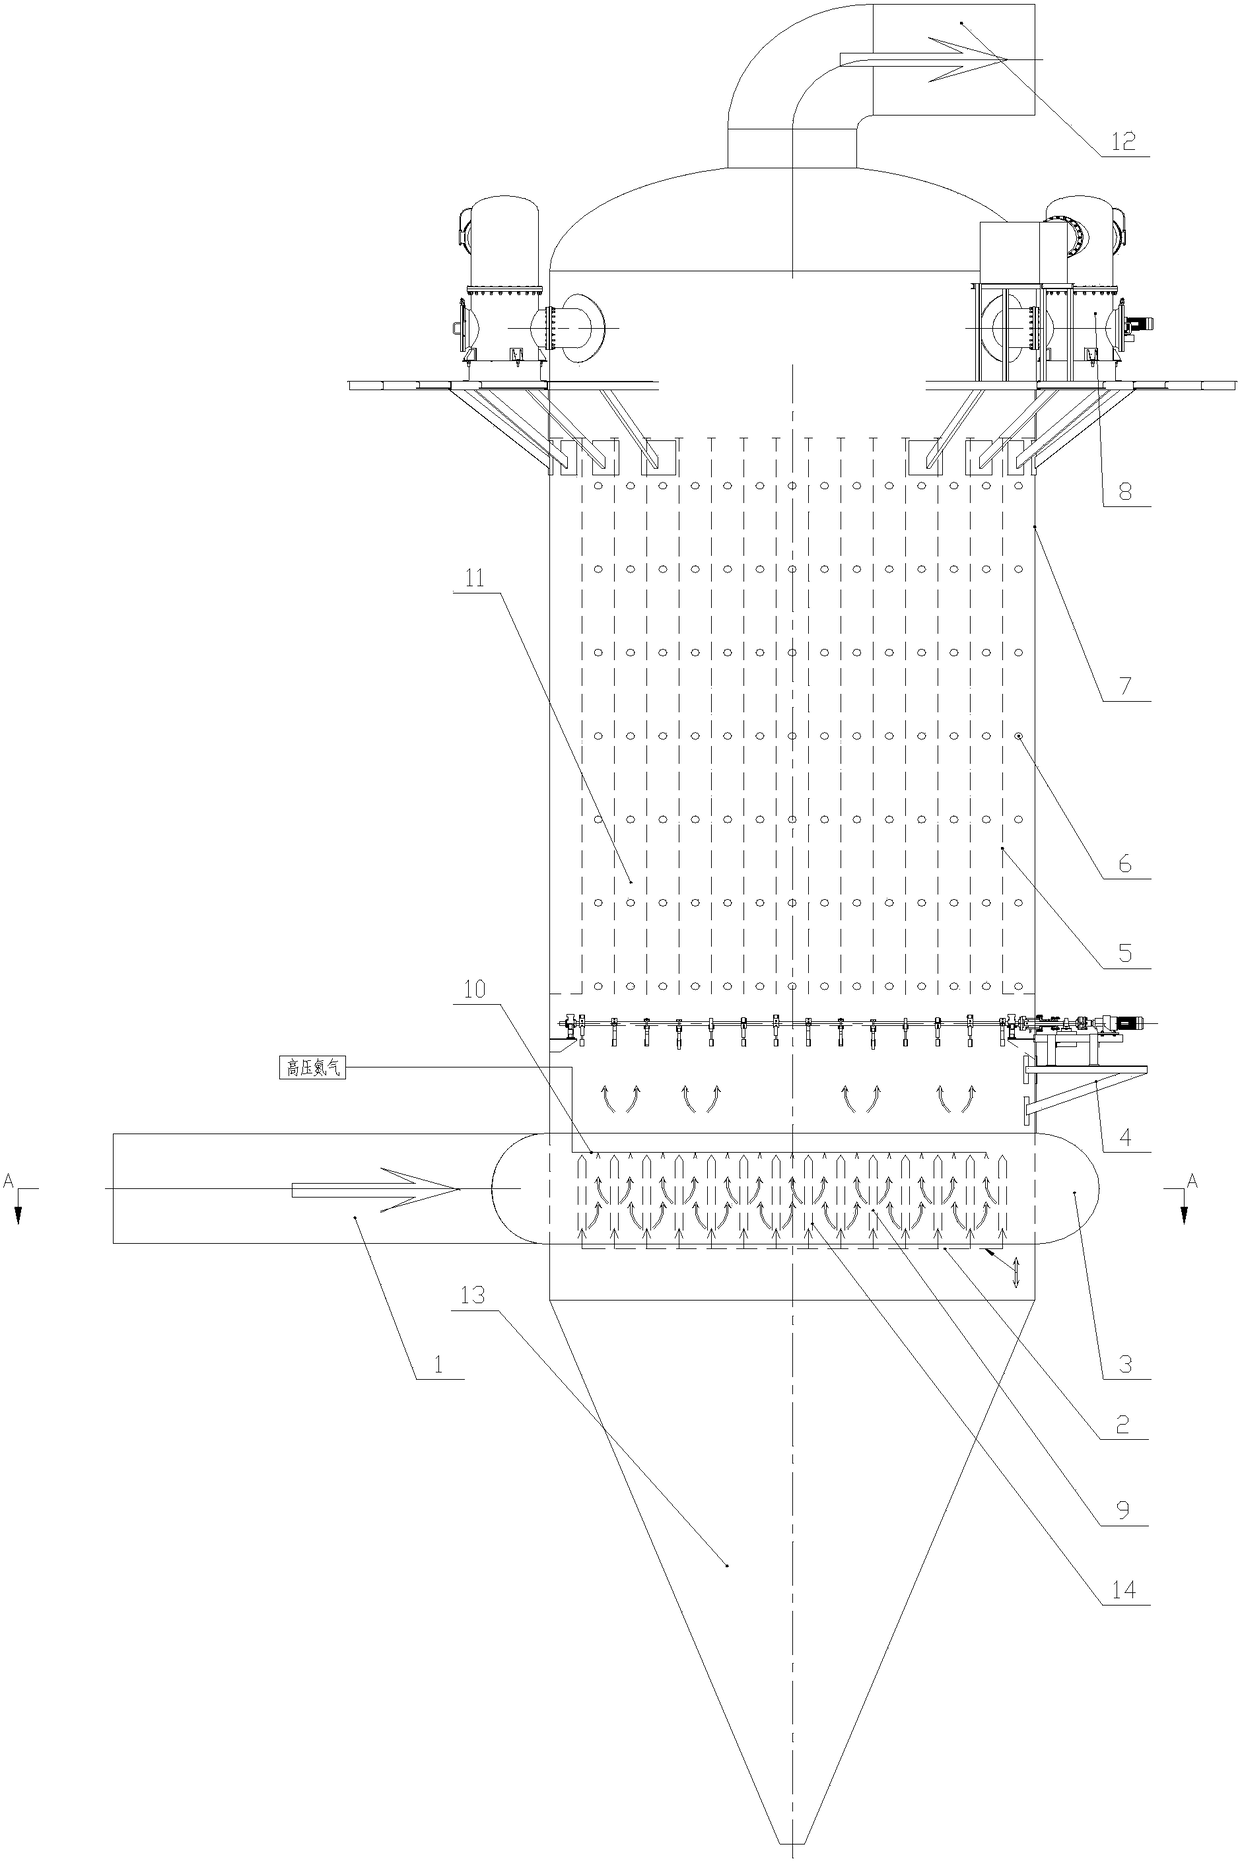 A dry-process vertical electrostatic precipitator for gas